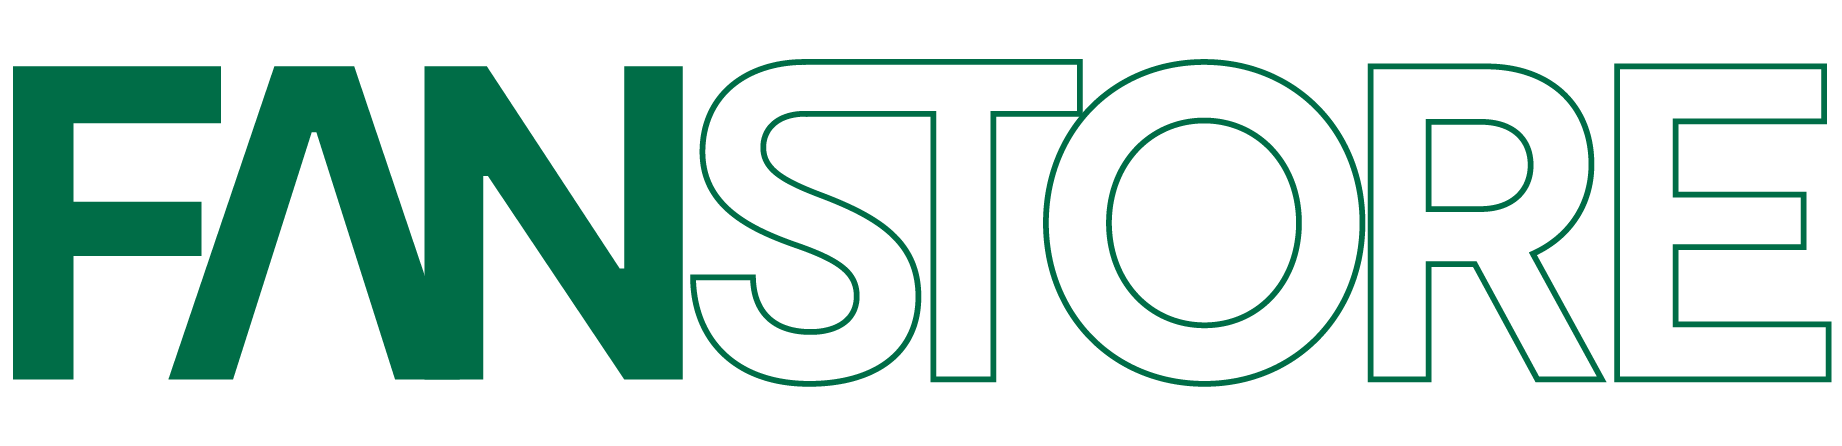 Logo da FANSTORE, com a palavra 'fan' em verde e 'store' transparente contornado em verde.